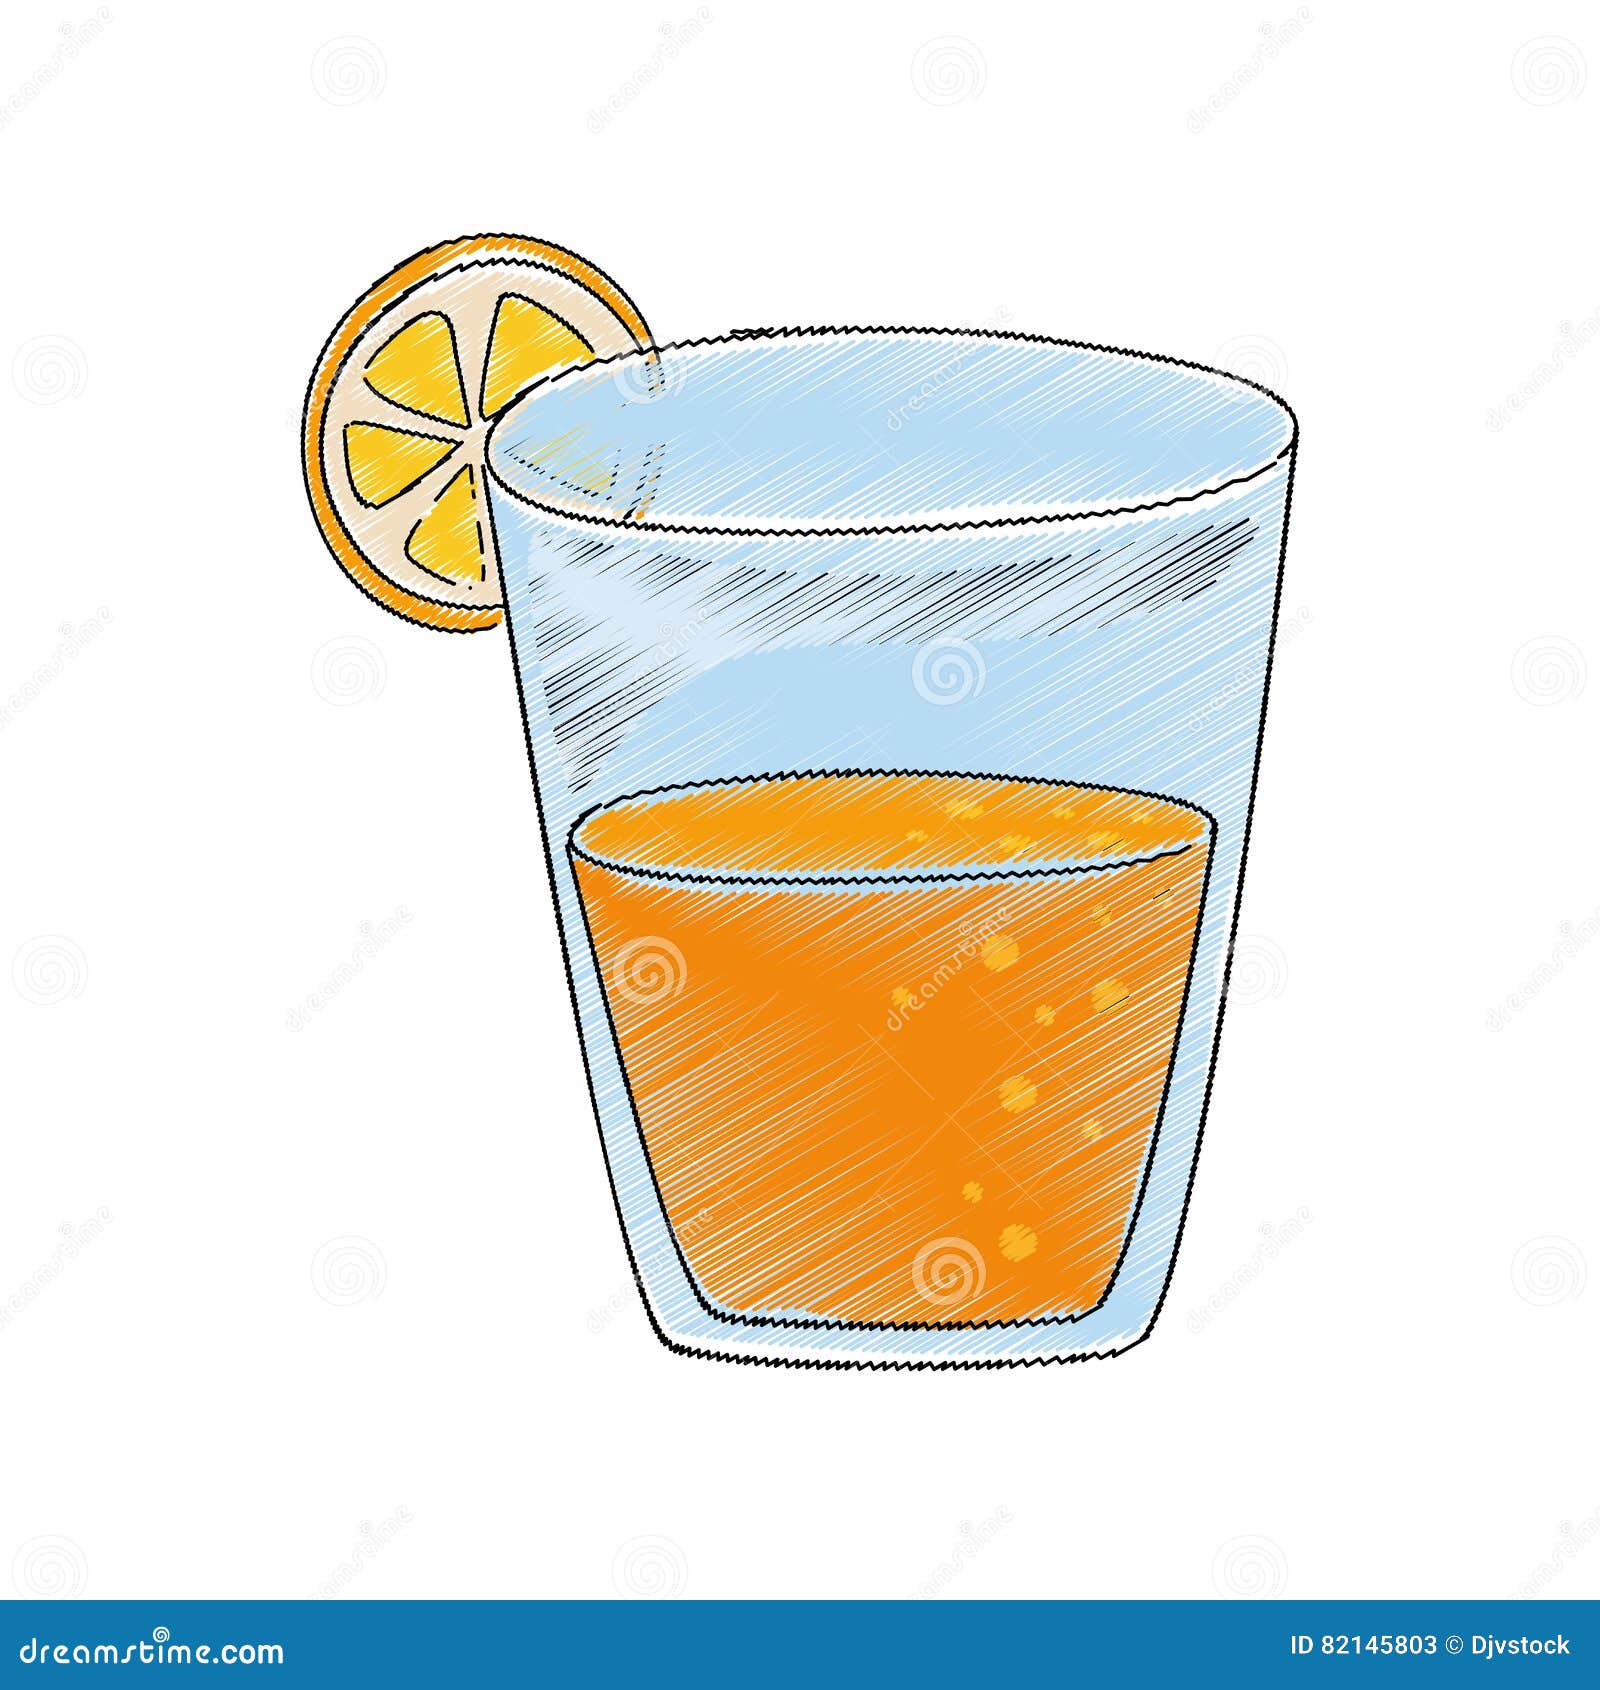 Delicious orange juice stock vector. Illustration of healthy - 82145803